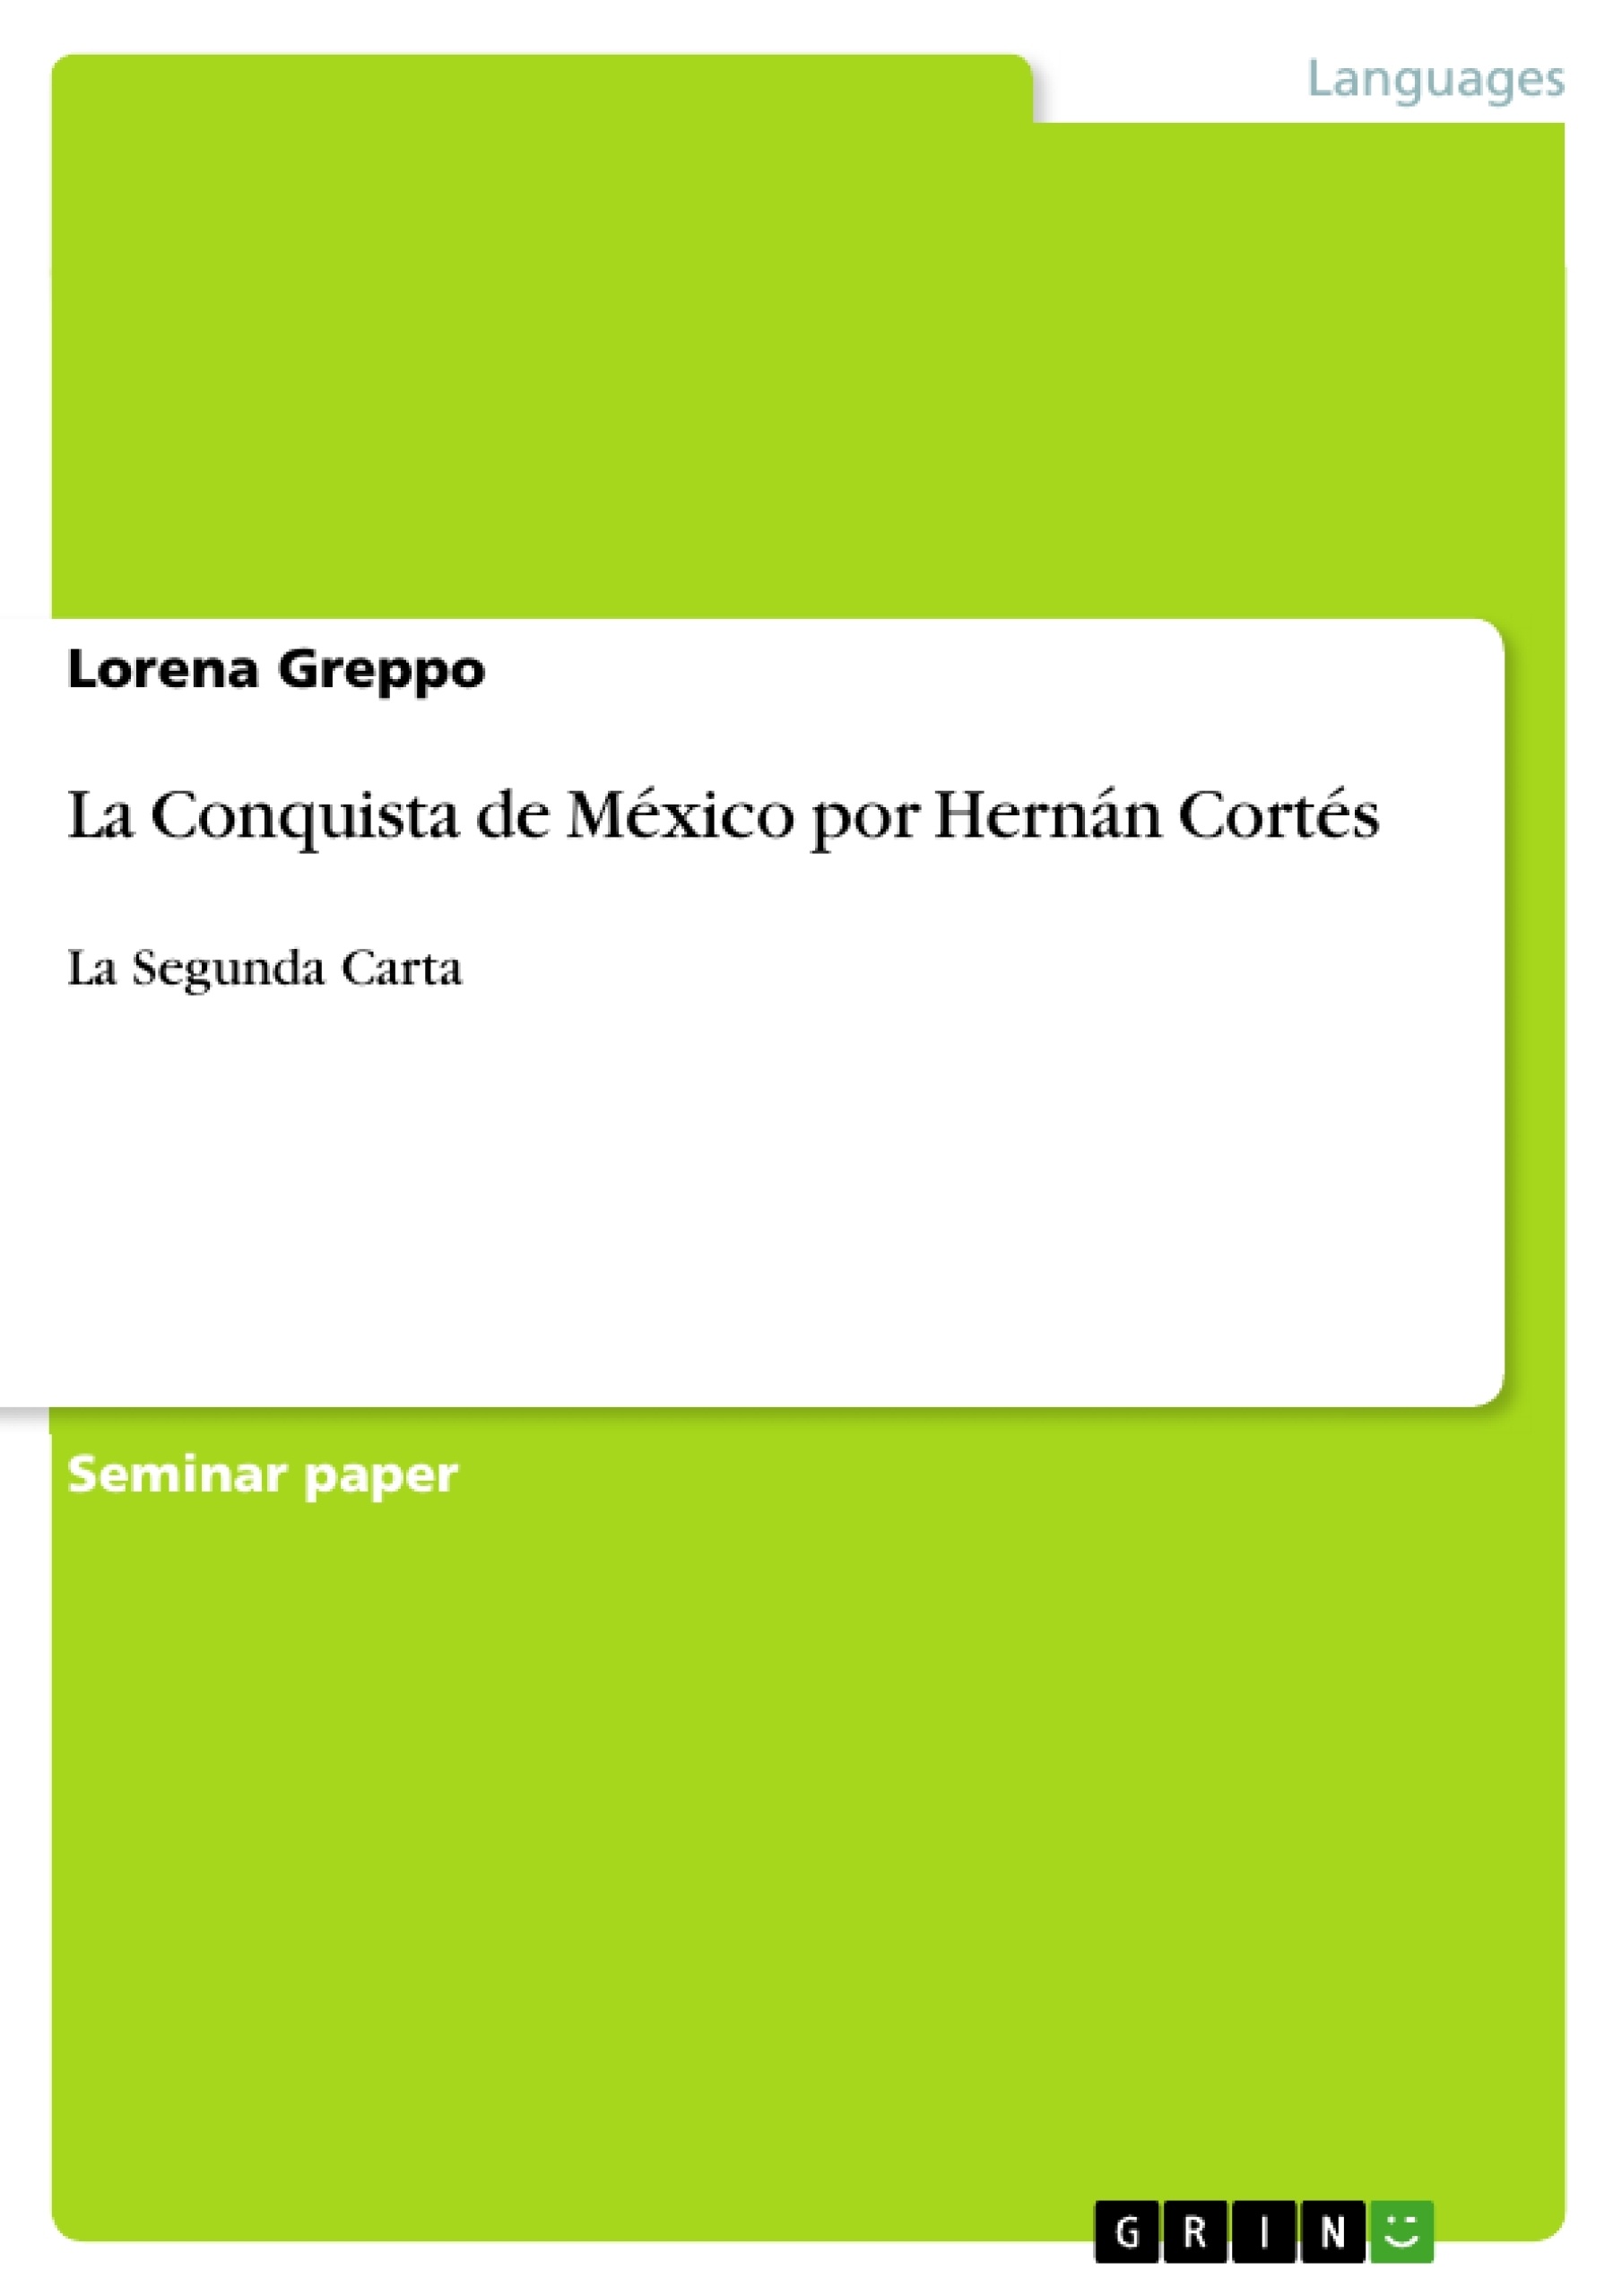 La Conquista de México por Hernán Cortés - GRIN